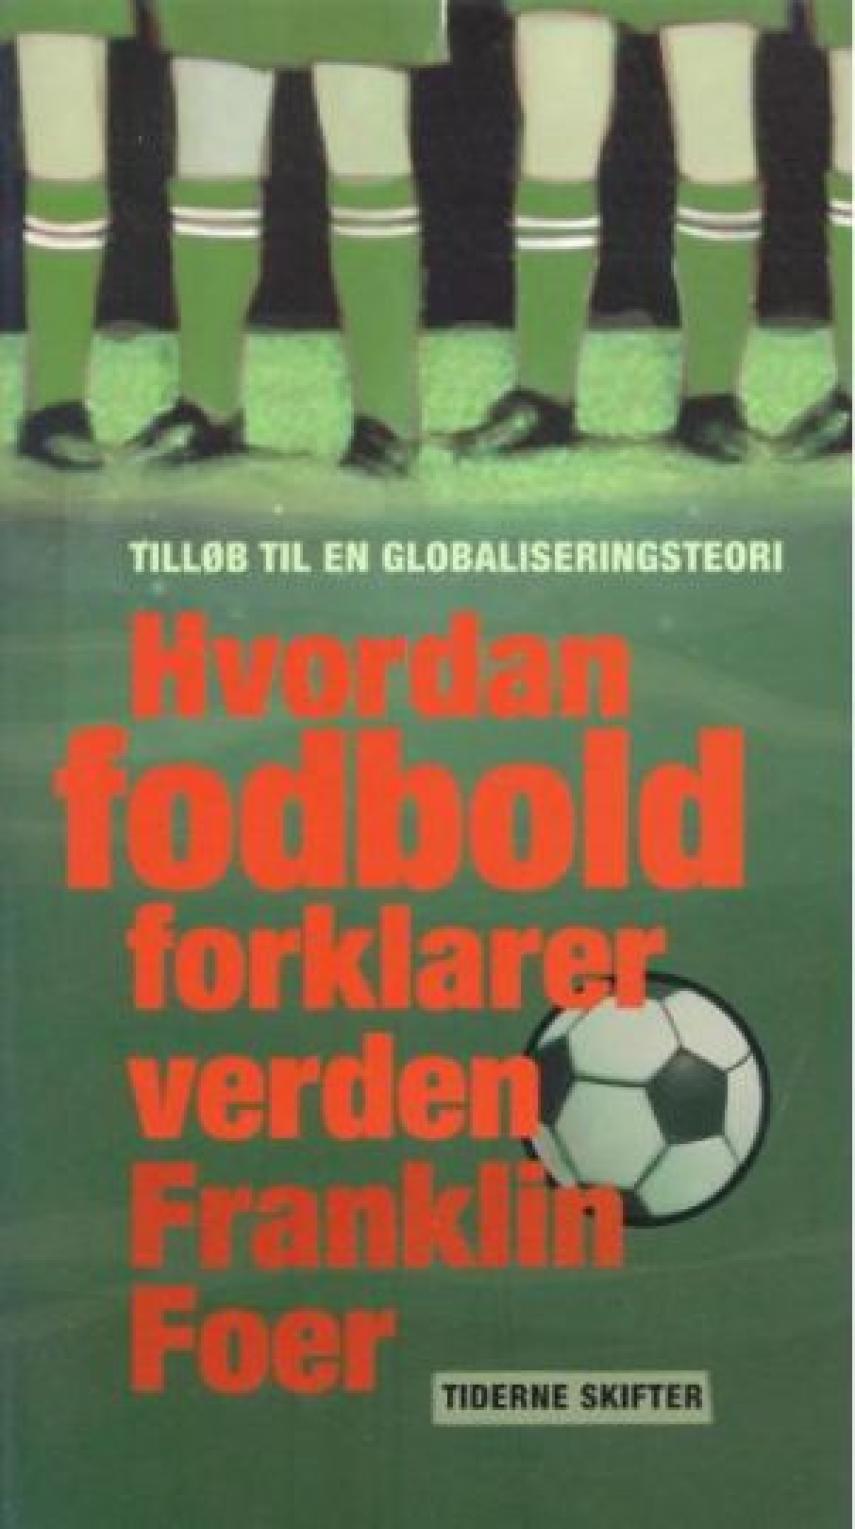 Franklin Foer: Hvordan fodbold forklarer verden : tilløb til en globaliseringsteori